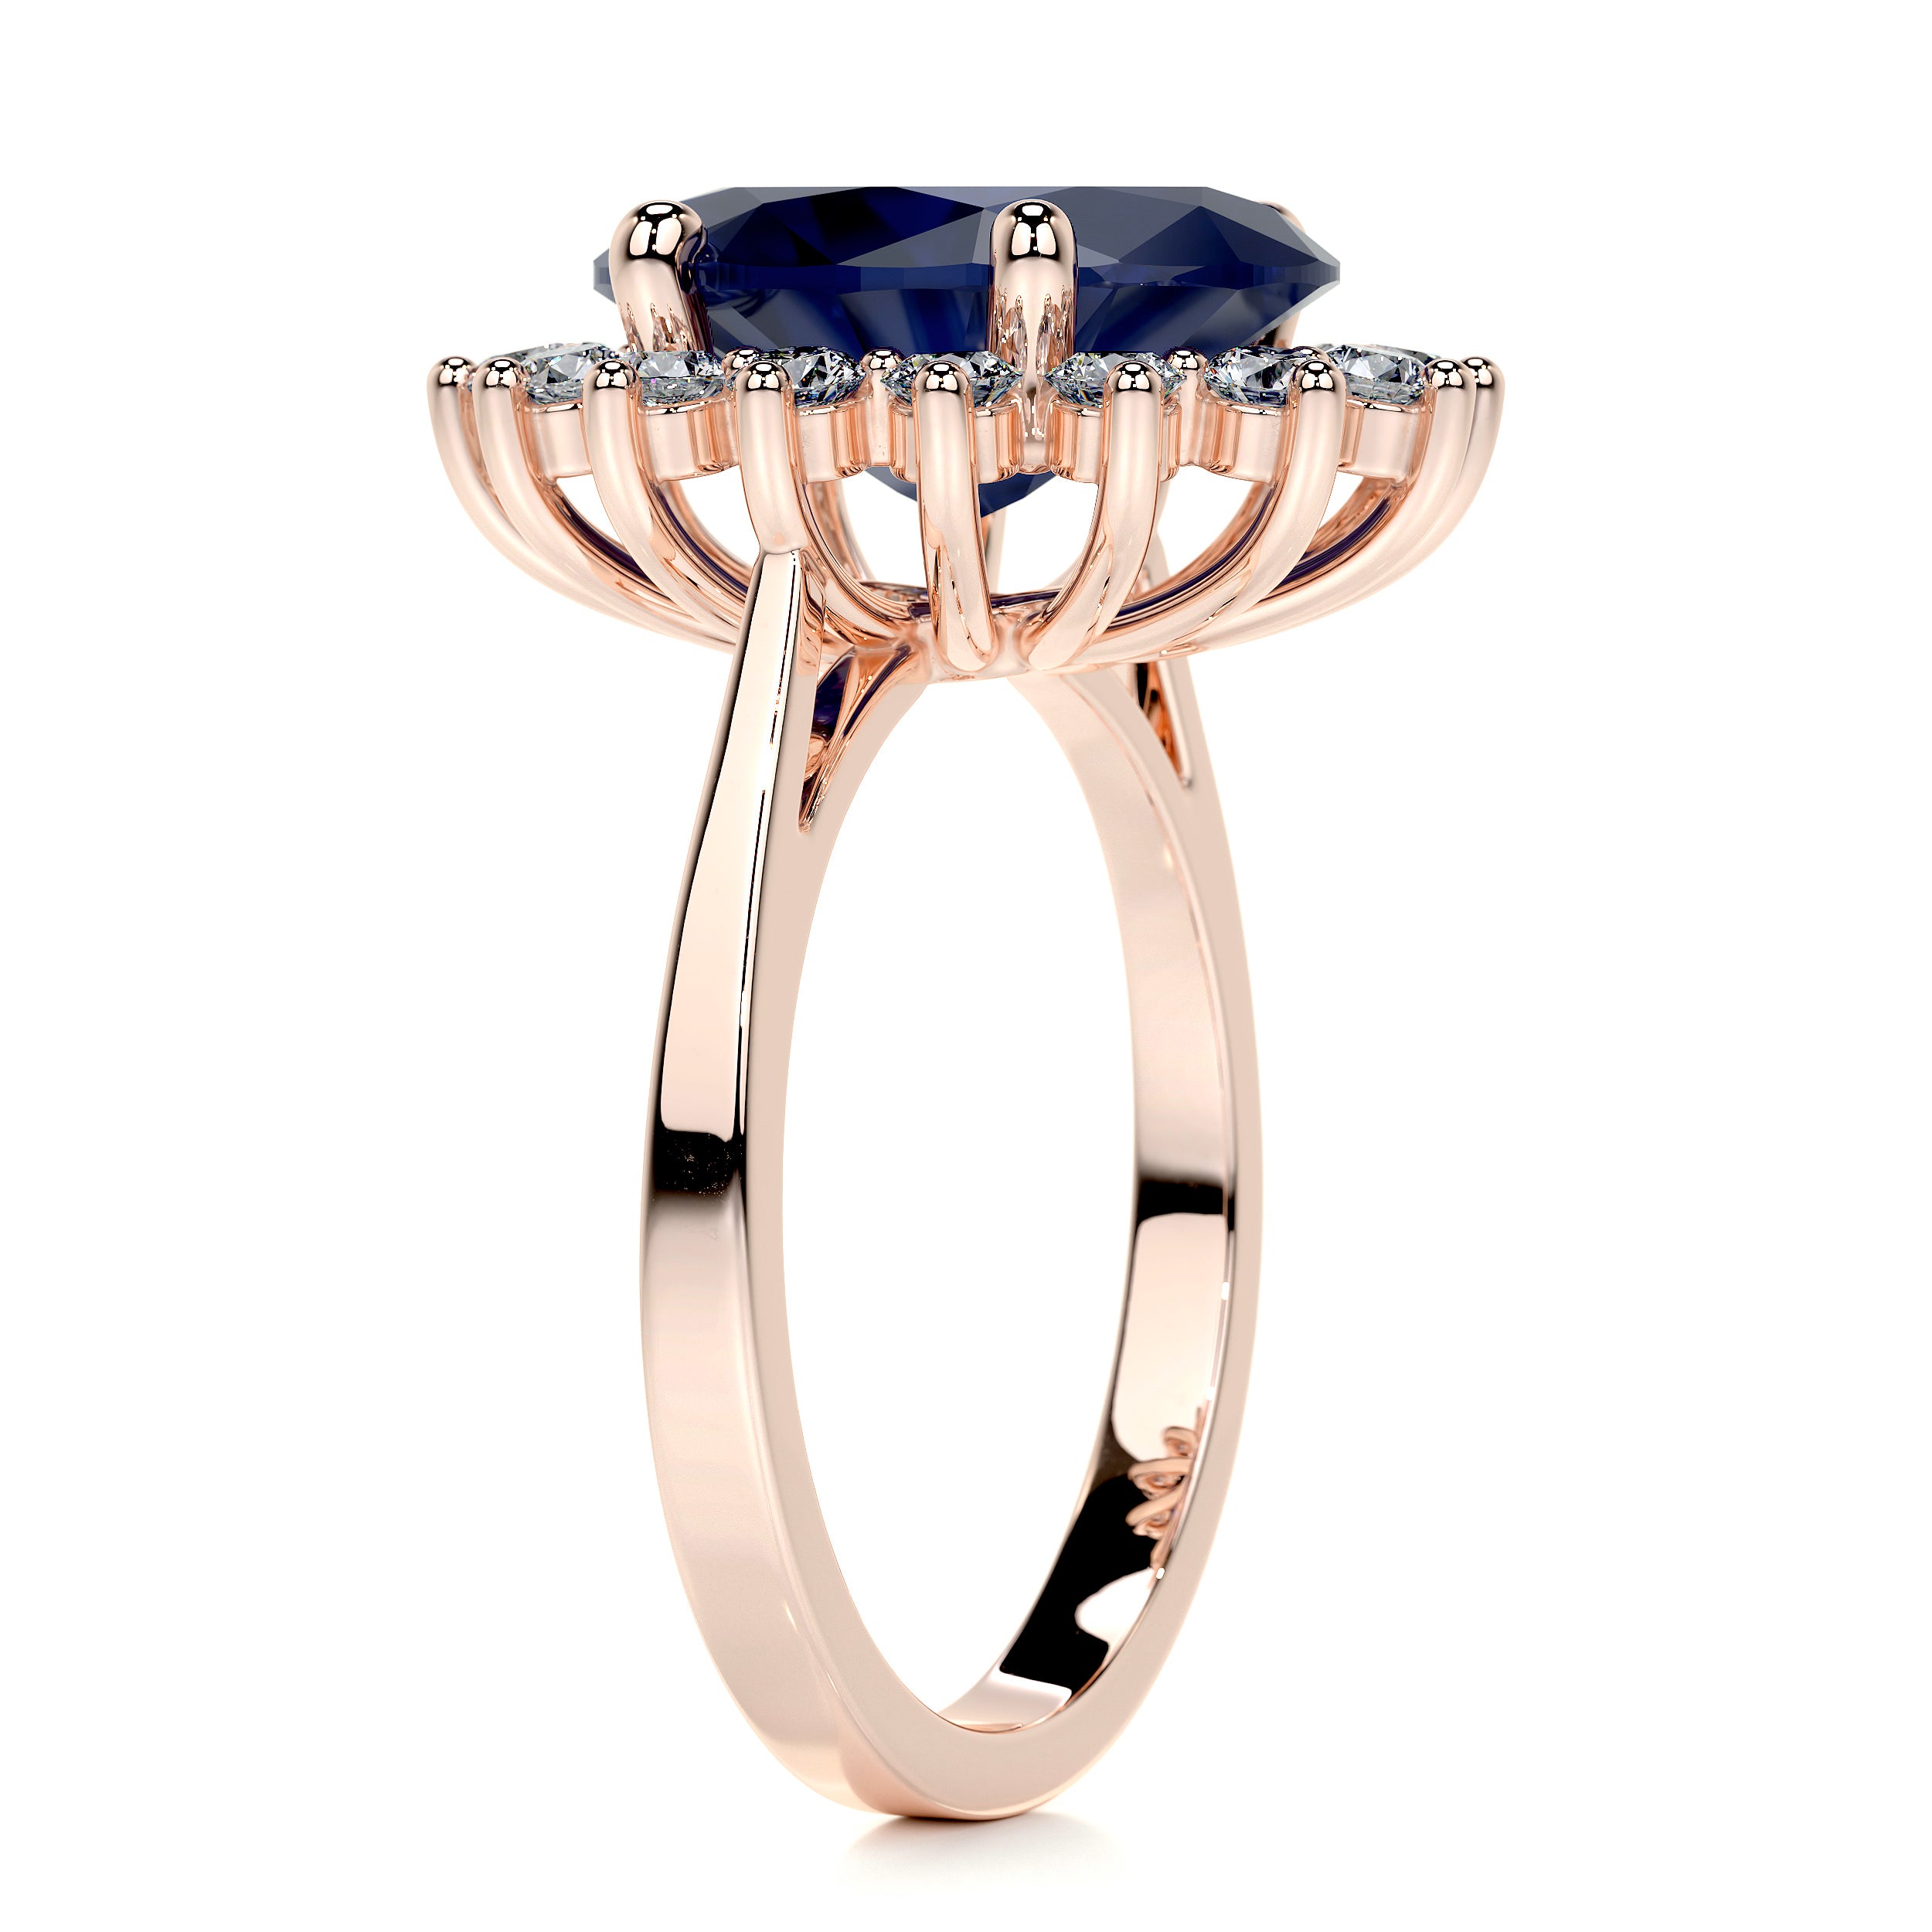 Lyn Gemstone & Diamonds Ring   (7 Carat) - 14K Rose Gold